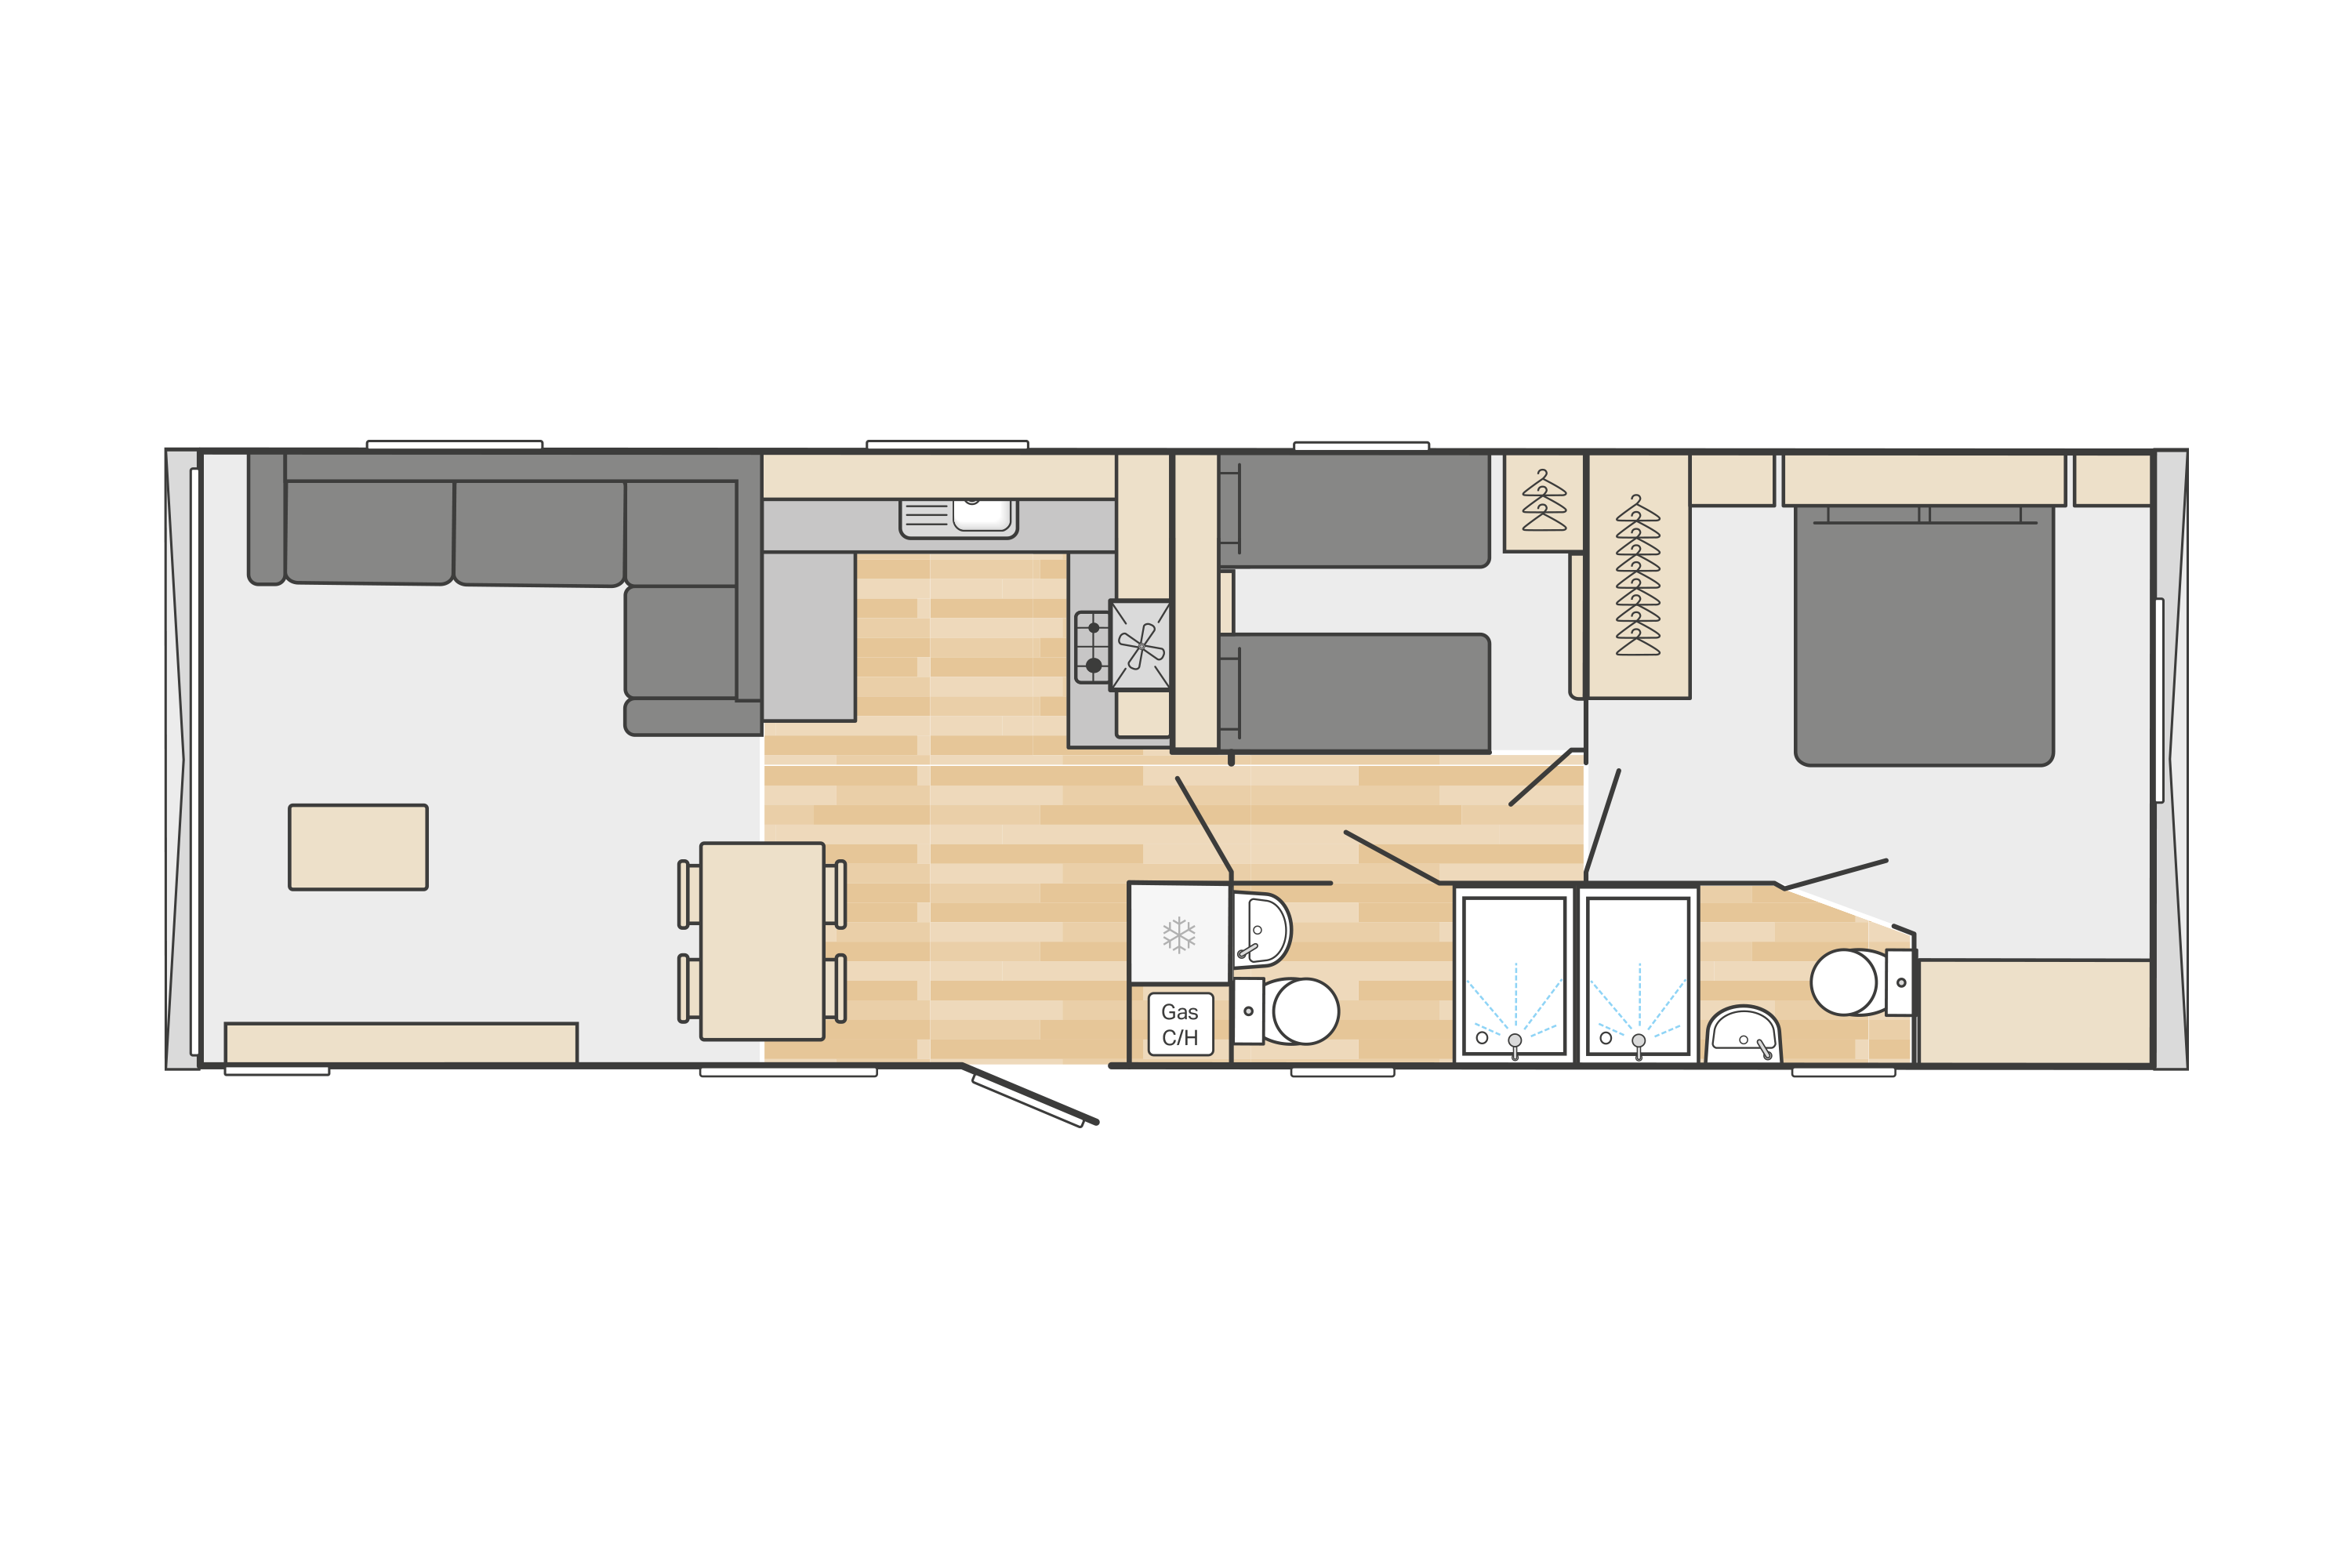 Ardennes (Scandi) 38' x 12' 2 Bedroom ES floorplan